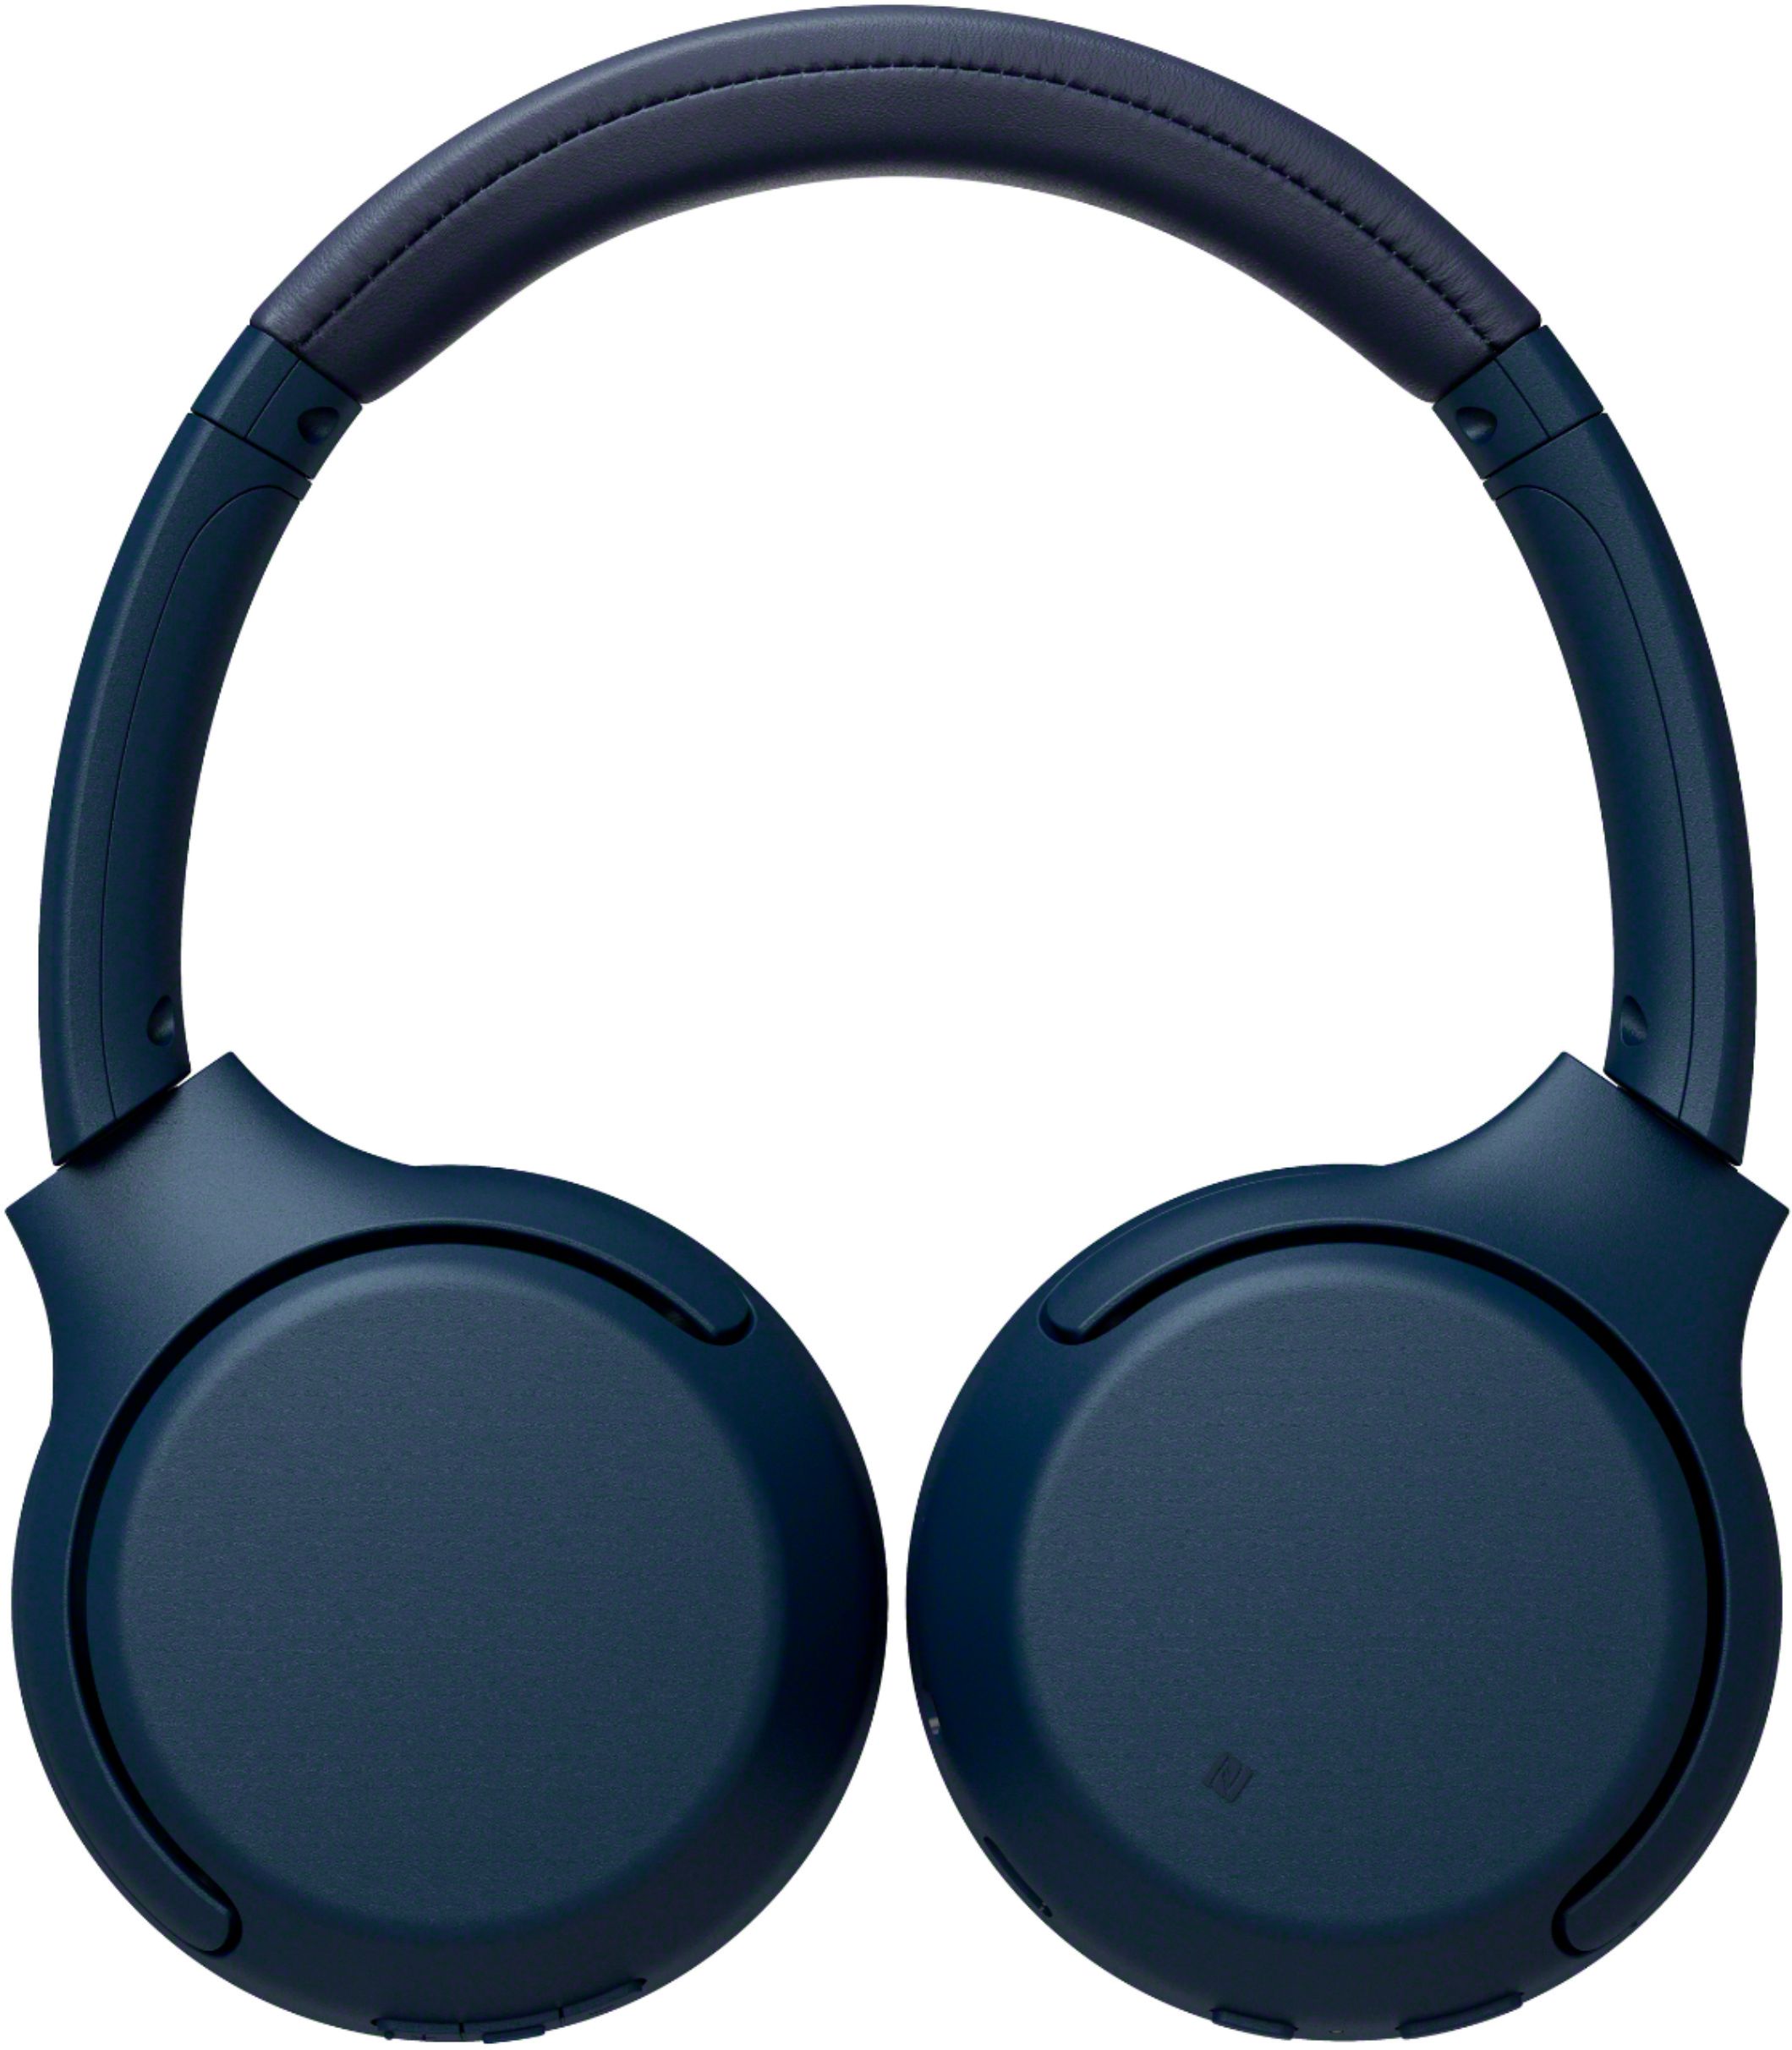 Sony Wh Xb700 Wireless On Ear Headphones Blue Whxb700 L Best Buy